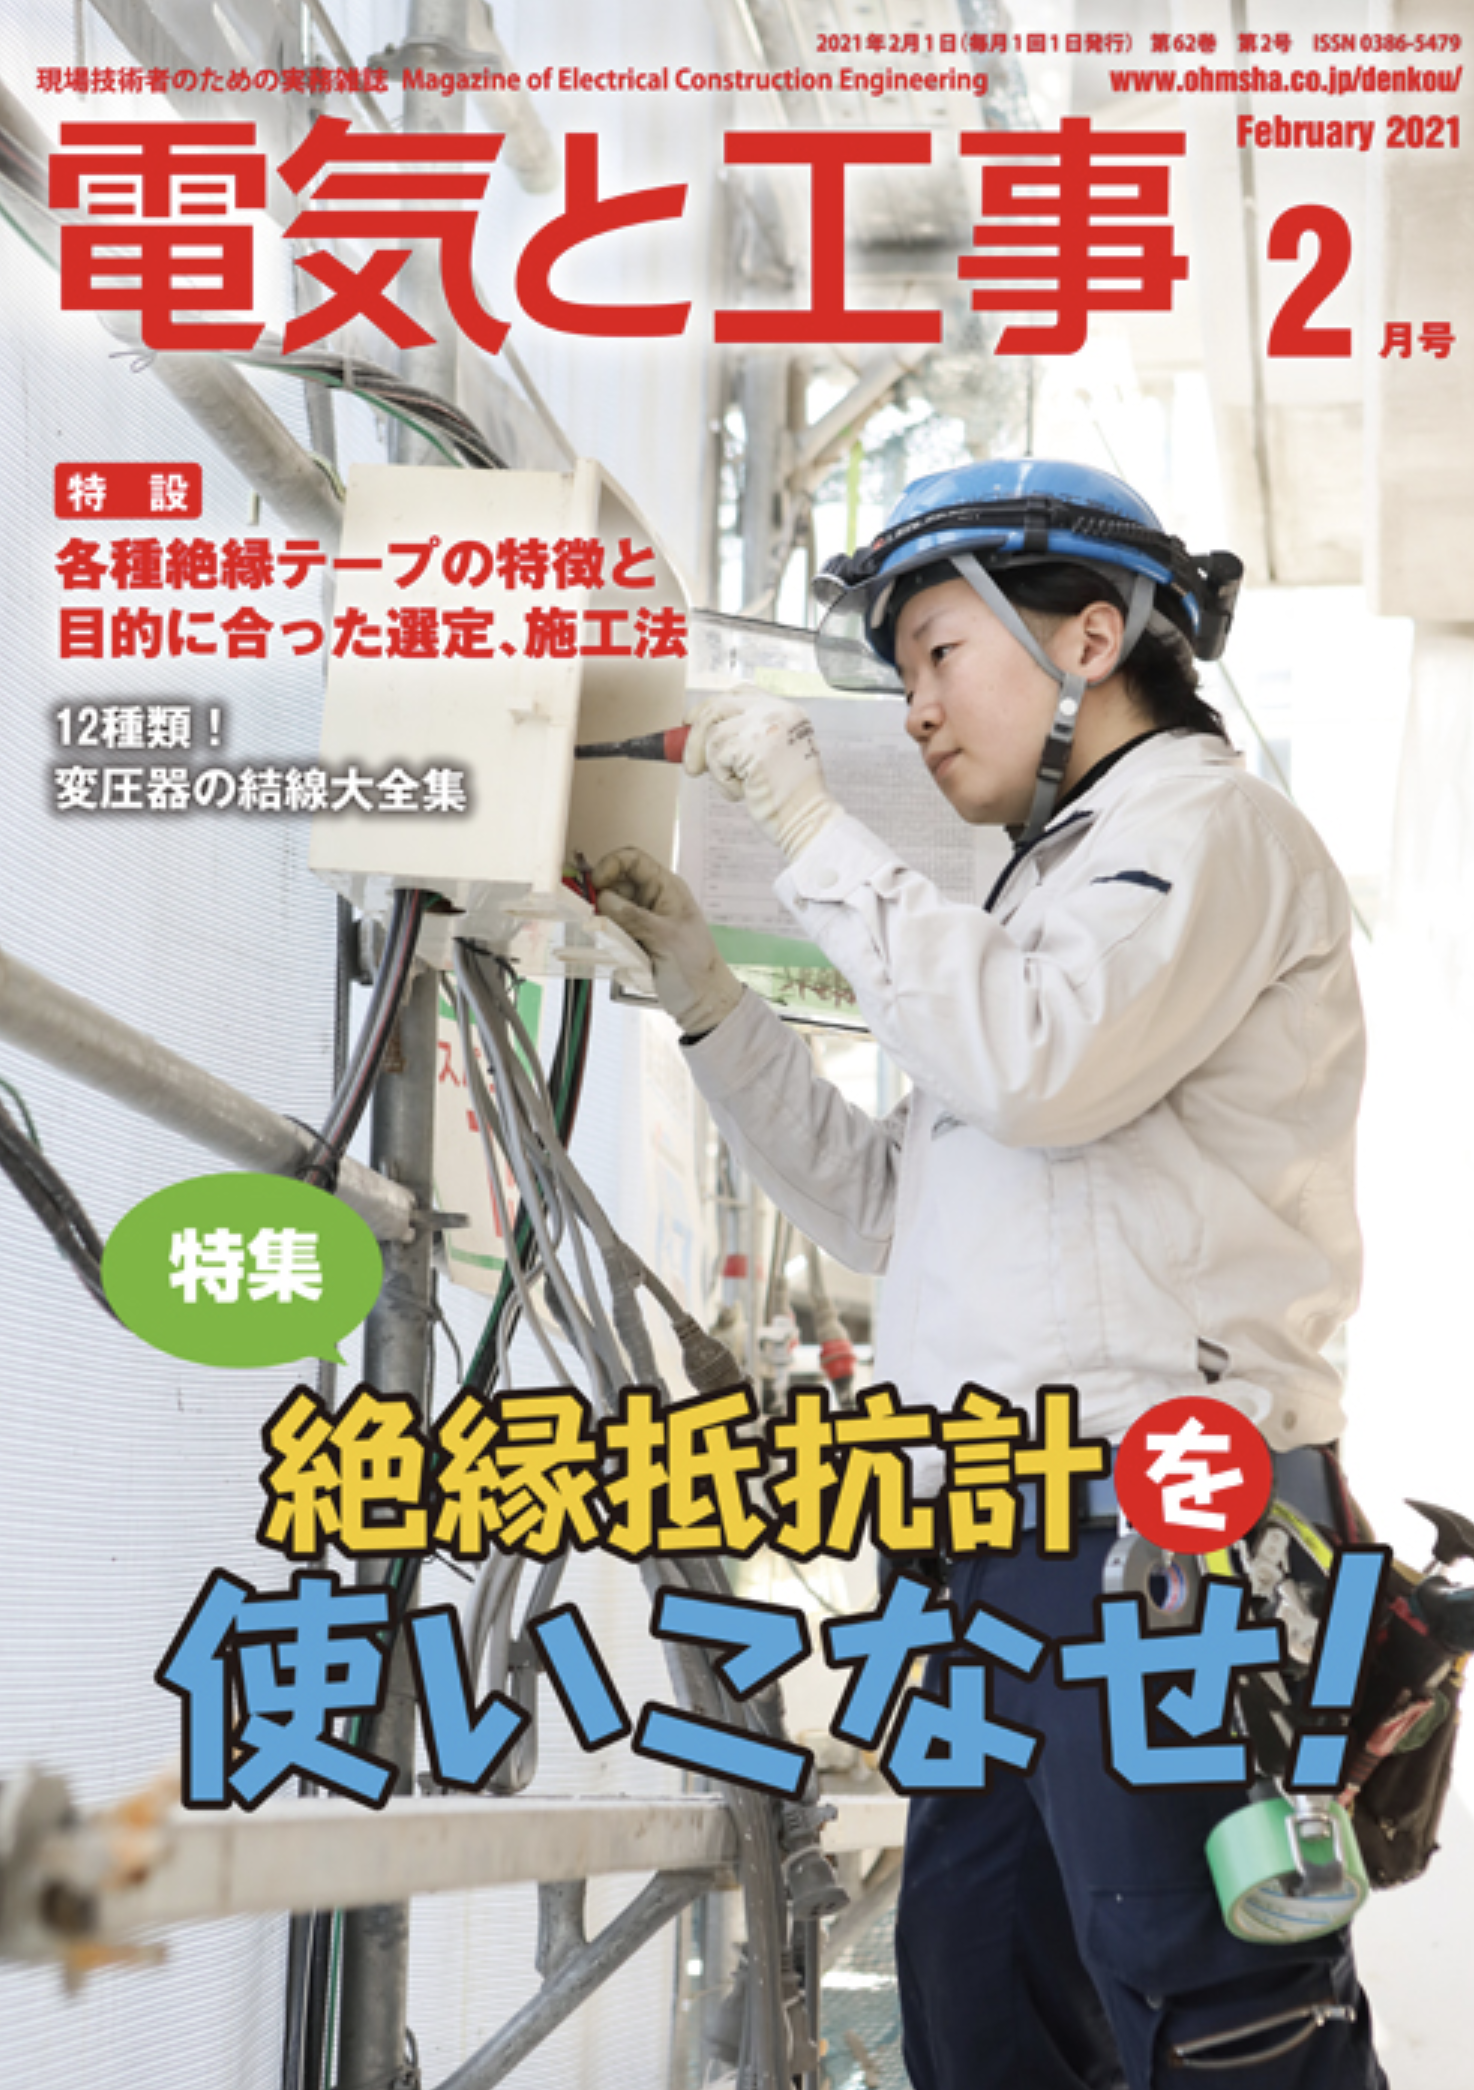 【新刊トピックス 2021年1月】電気と工事 2021年2月号 (第62巻第2号通巻809号)の画像